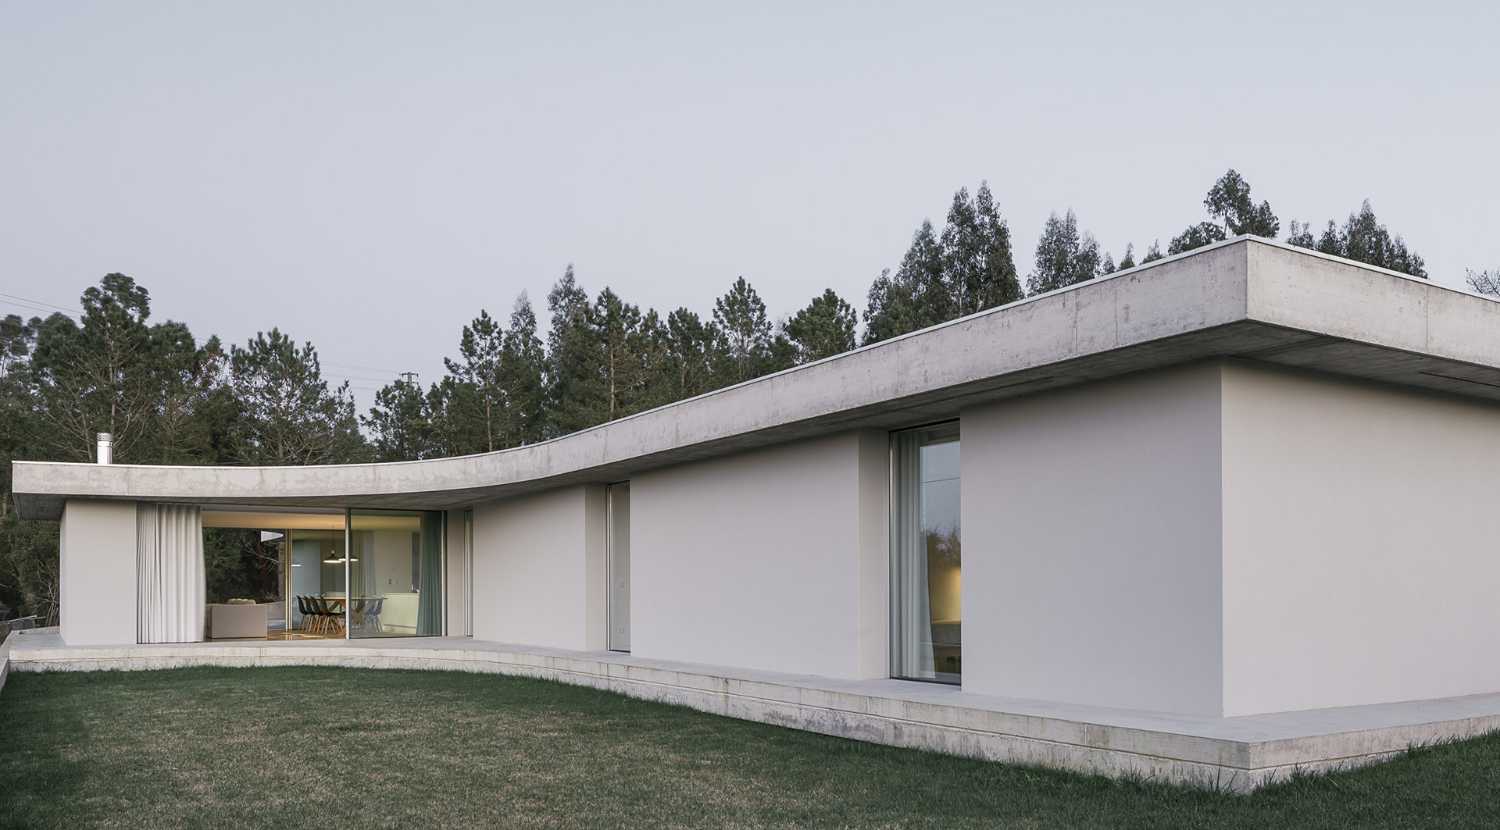 Casa Gloma, due lastre di cemento dalla forma organica definiscono l'architettura